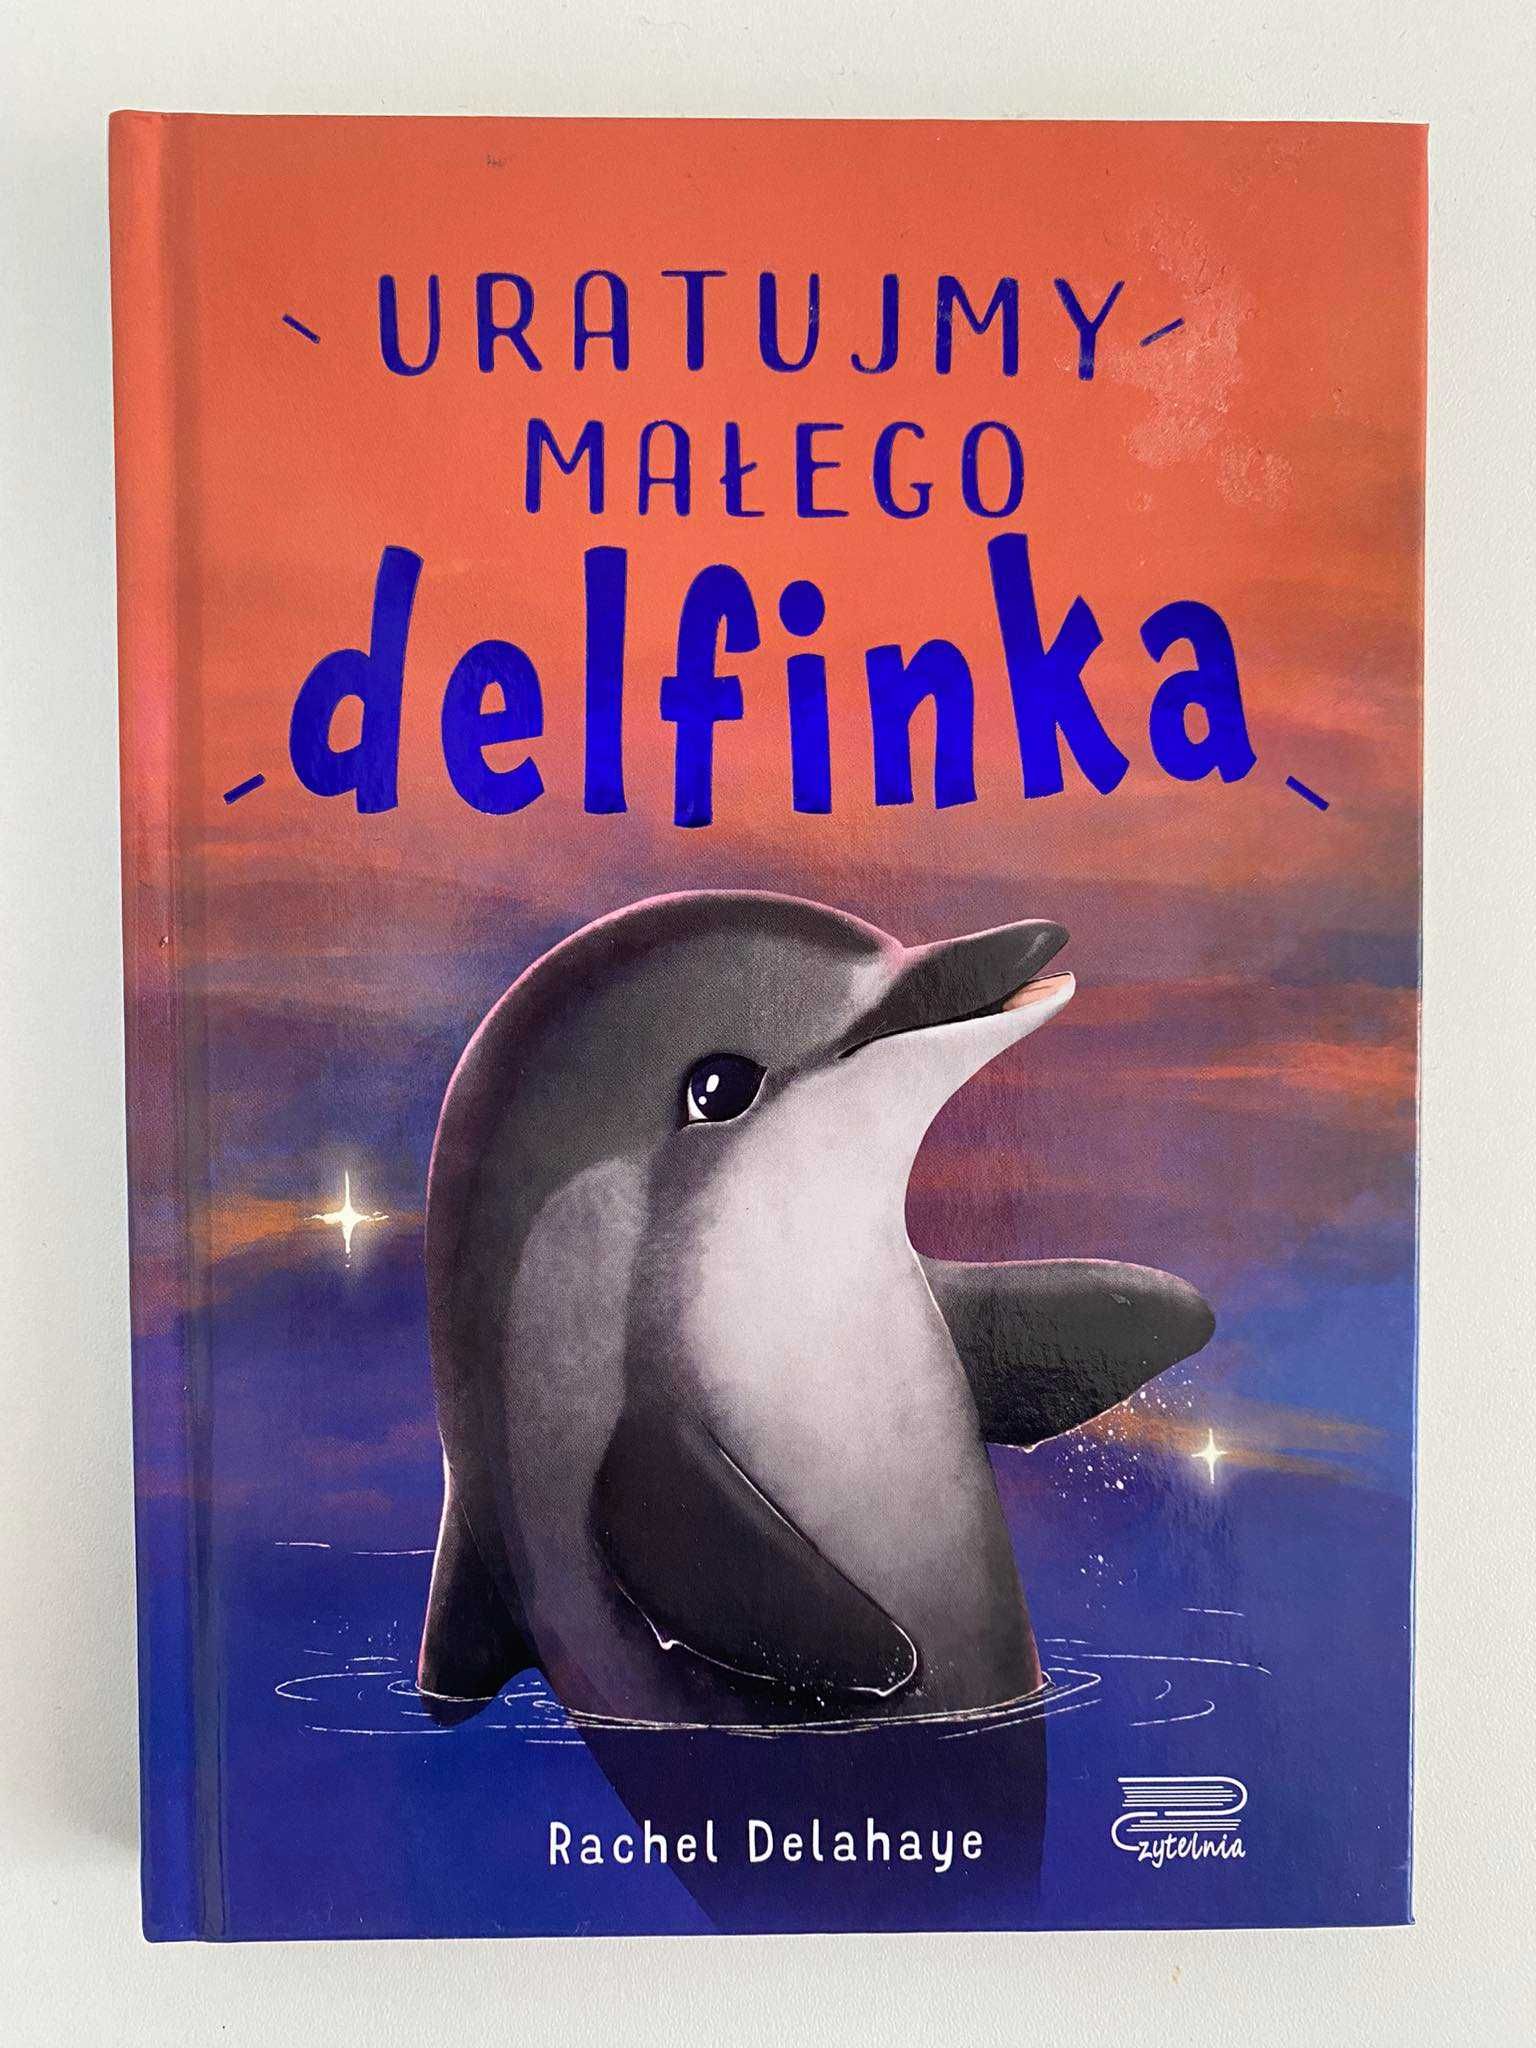 Książka "Uratujemy małego delfinka" , książka dla dzieci